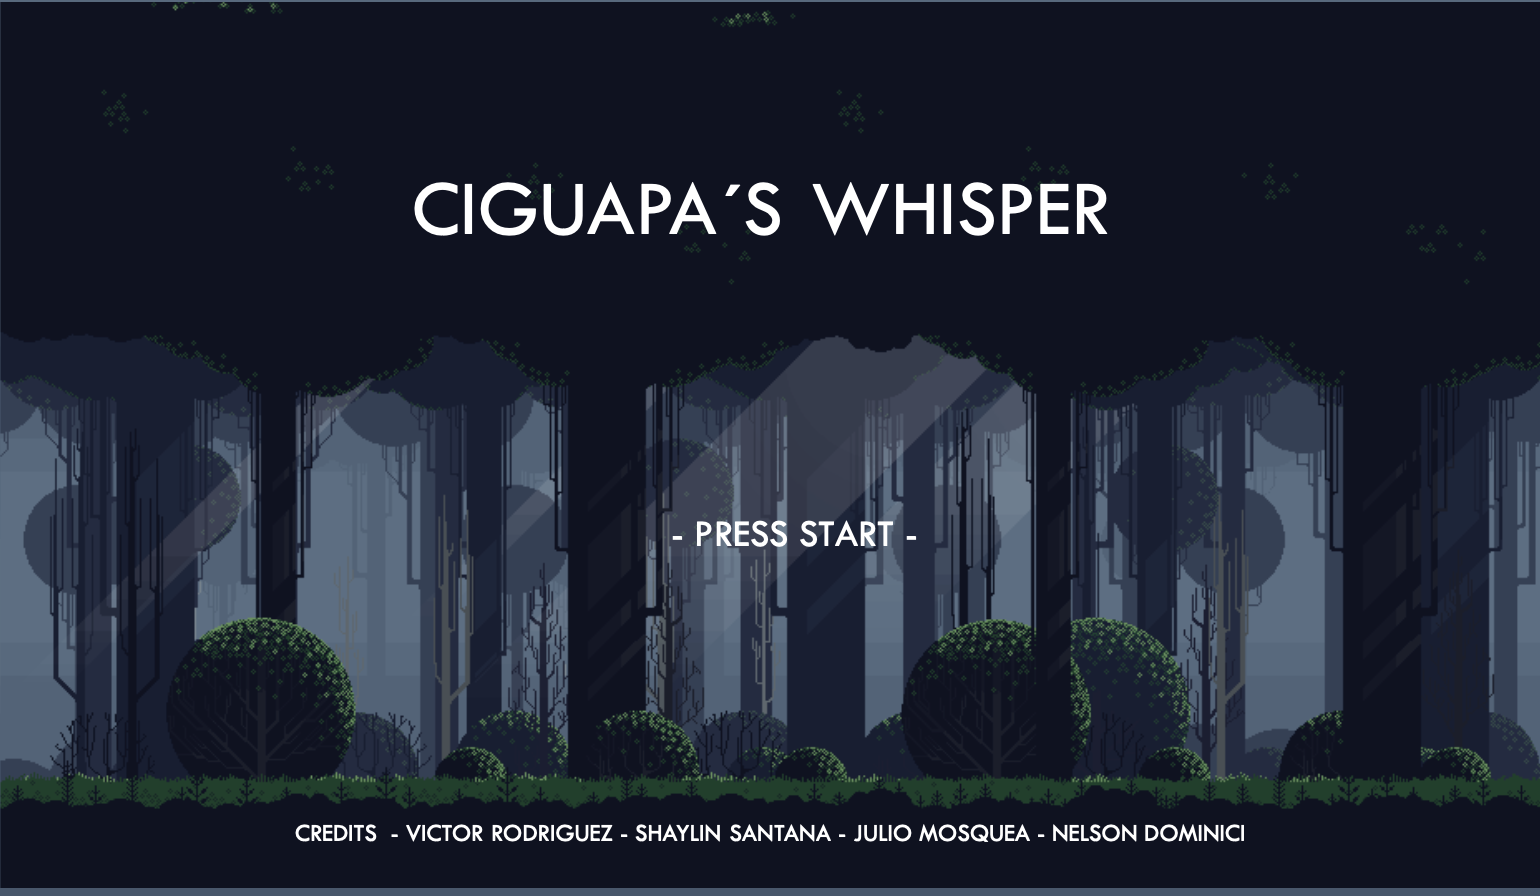 Ciguapa's Whisper